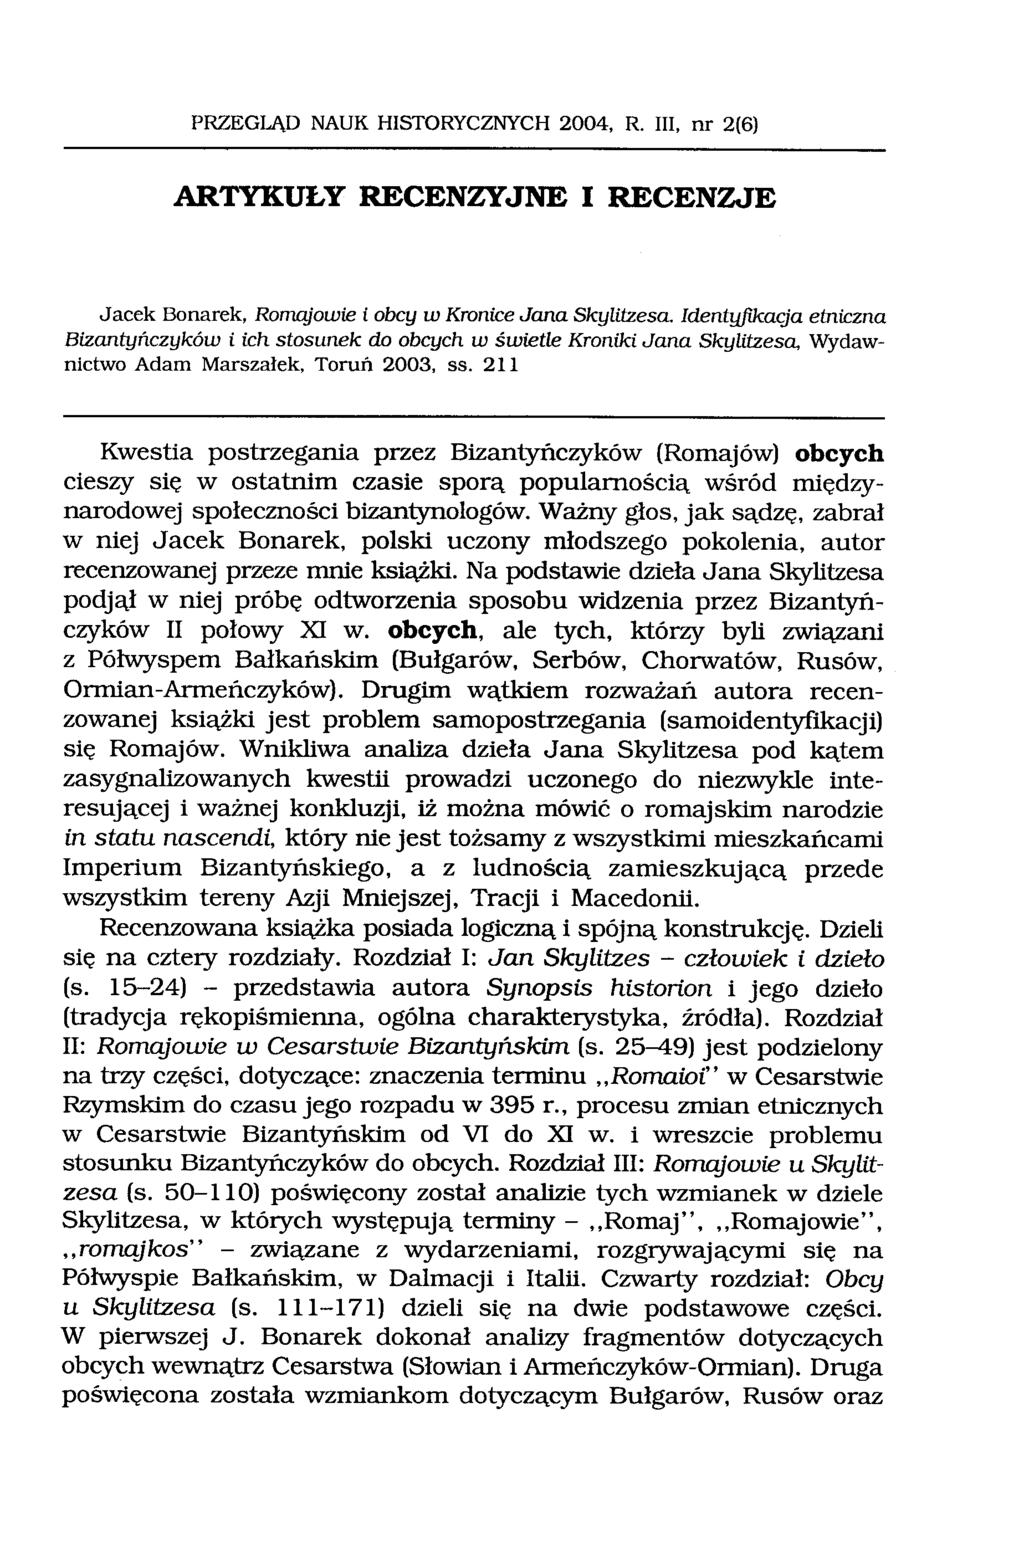 PRZEGLĄD NAUK HISTORYCZNYCH 2004, R. III, nr 2(6) ARTYKUŁY RECENZYJNE I RECENZJE Jacek Bonarek, Romqjowie i obcy w Kronice Jana Skylitzesa. ldent!